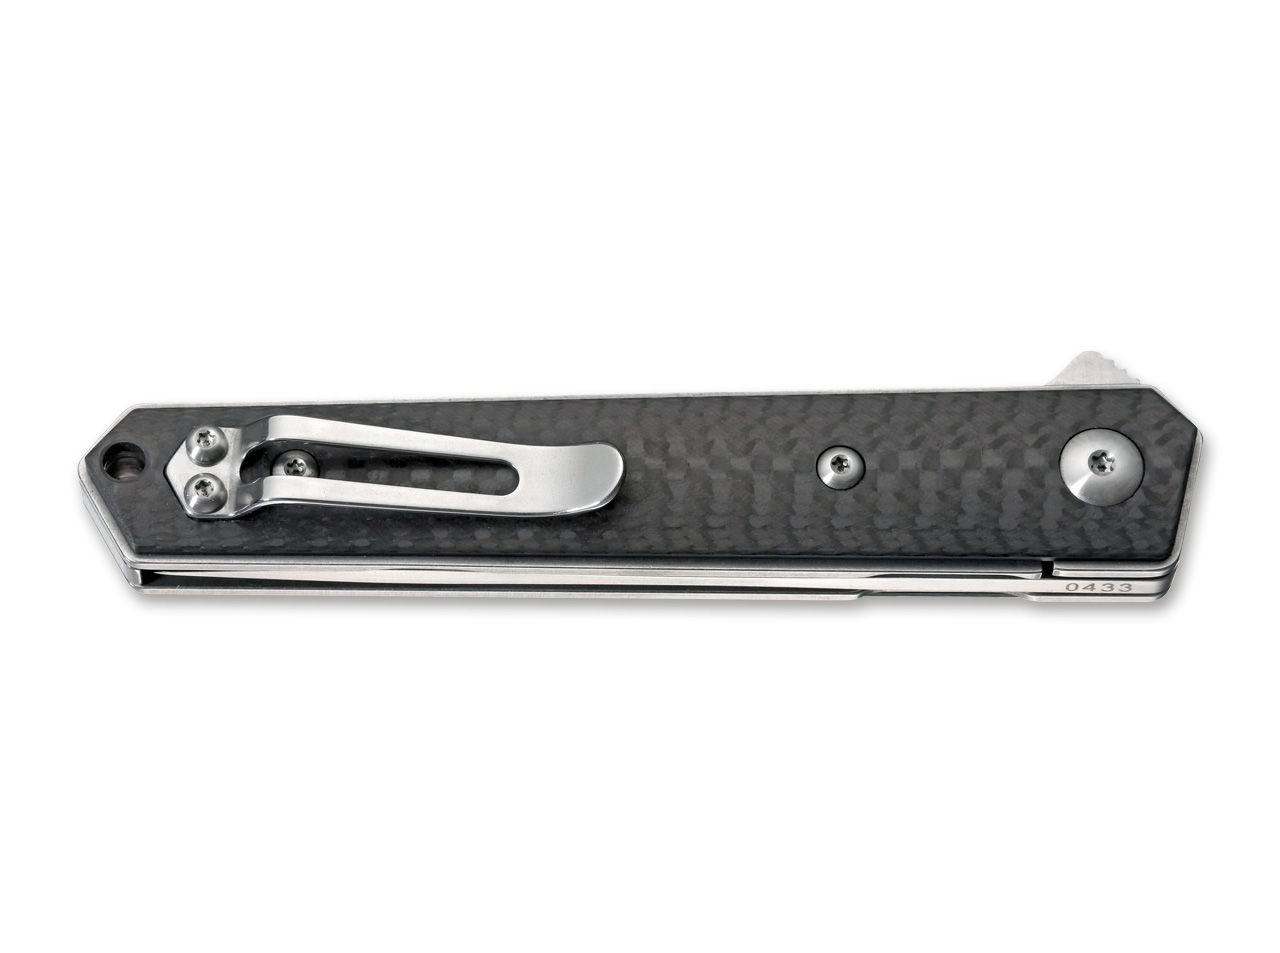 Boker Plus Mini Kwaiken Flipper 3" D2 IKBS Carbon Fiber Folding Knife 01BO256